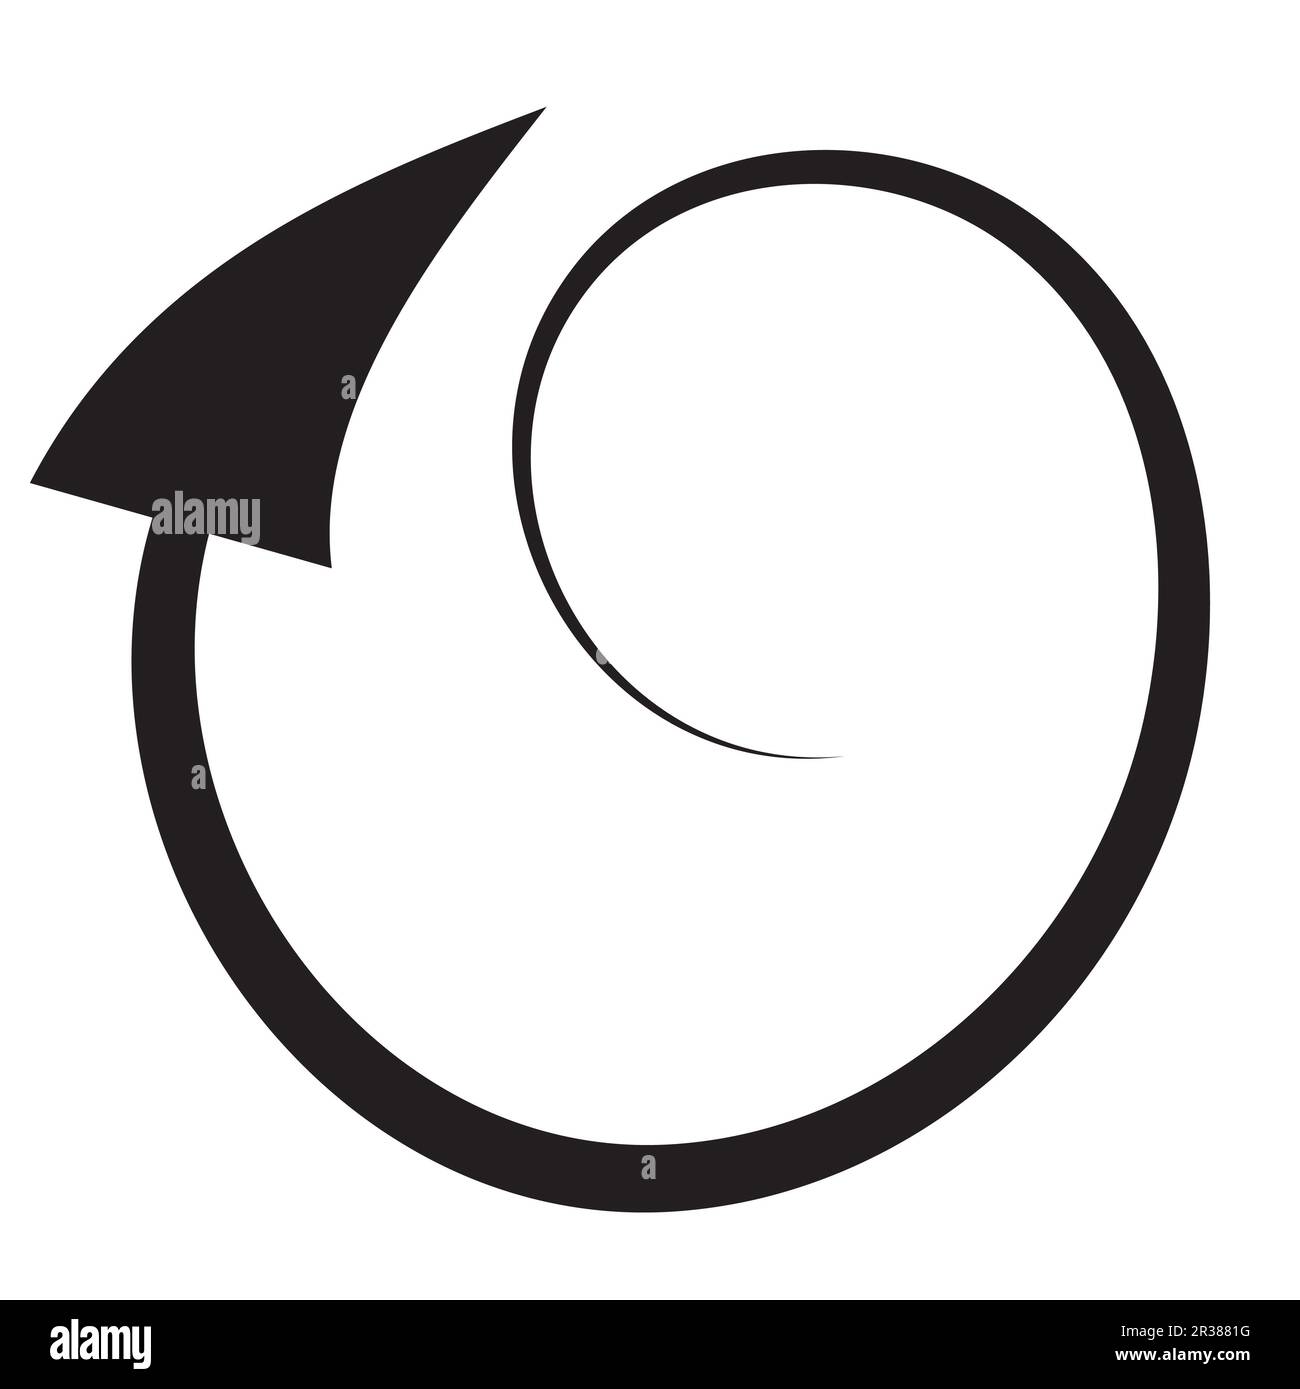 Ensemble de symboles de flèche ou contour d'esquisse de cercle, courbe, glissement vers le haut, ligne noire, icône de flèche plate éléments dessinés à la main pour la conception graphique illustrati Banque D'Images